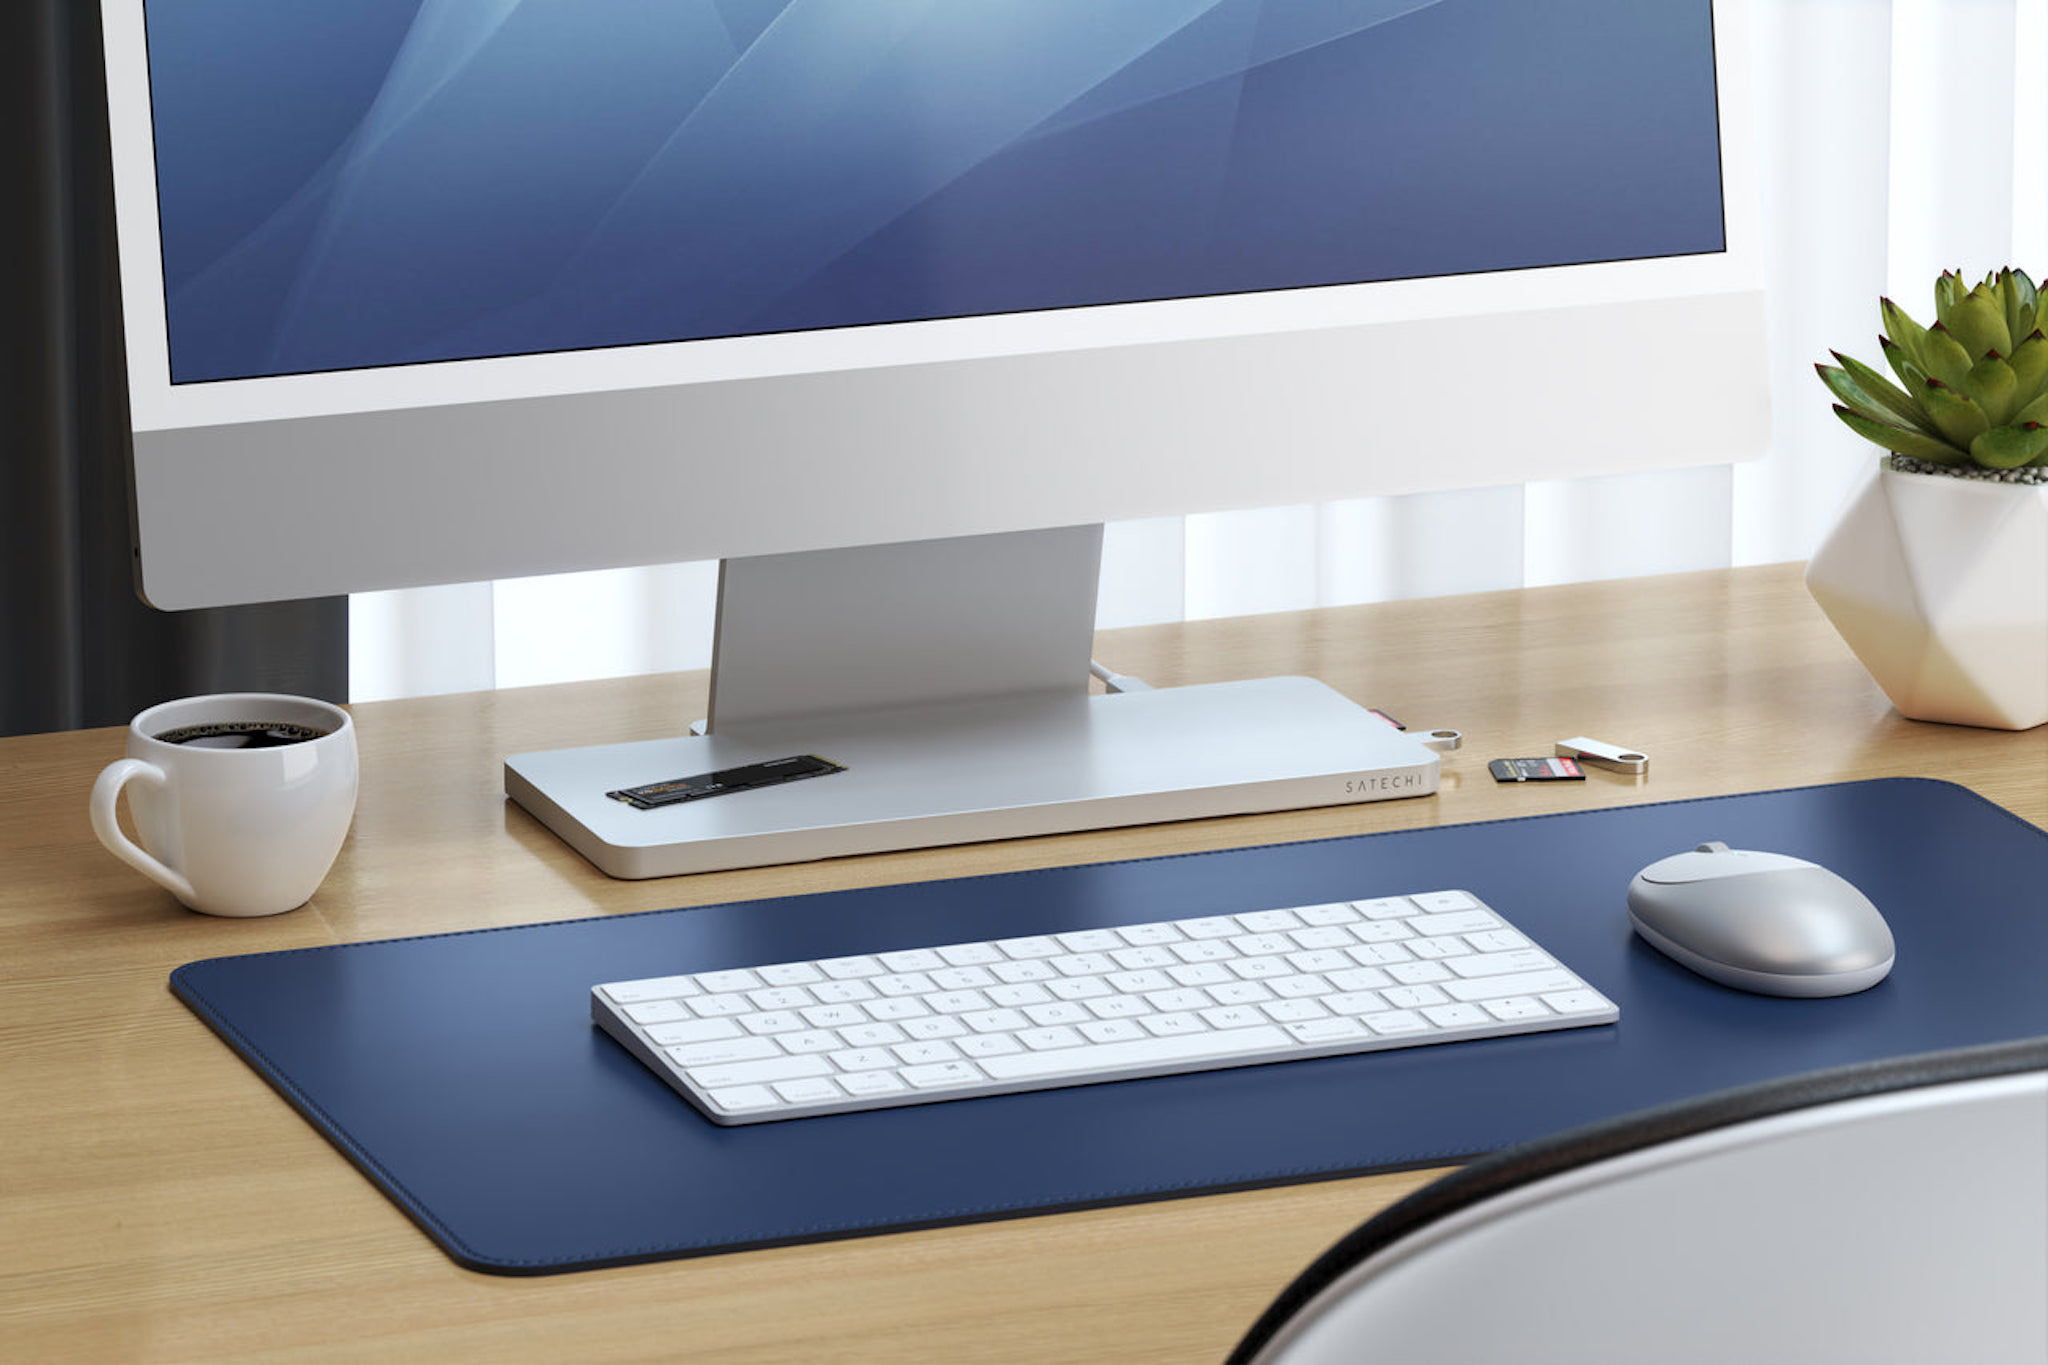 Satechi ra mắt dock USB-C cho iMac M1 có khe mở rộng SSD NVMe hoặc SATA